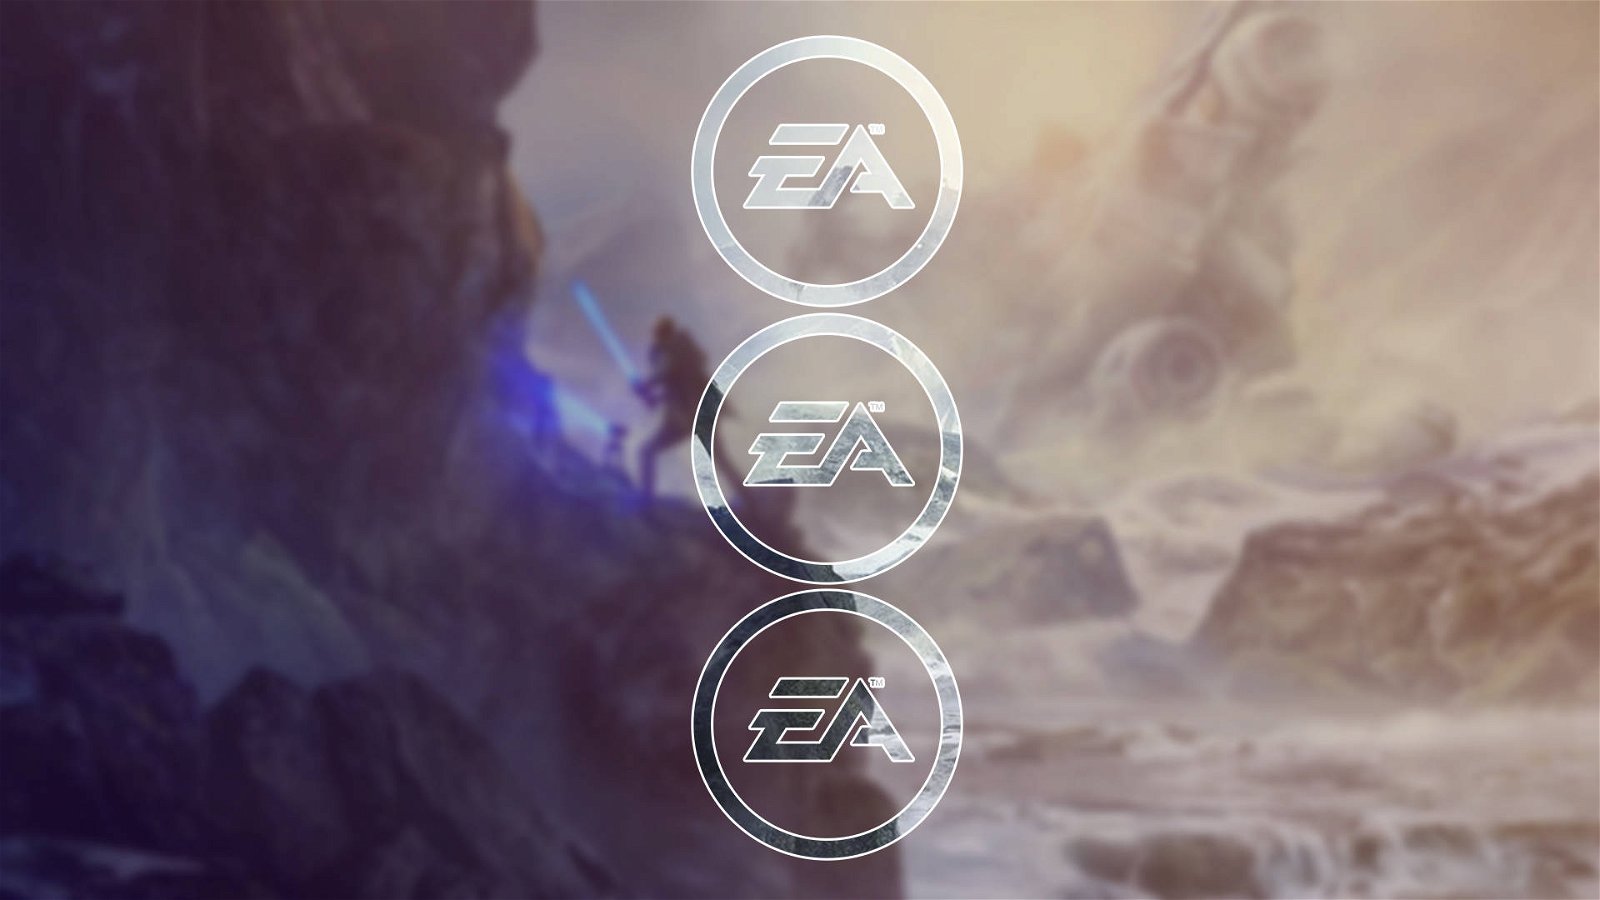 Immagine di Electronic Arts E3 2019, quali novità verranno annunciate all'EA Play?